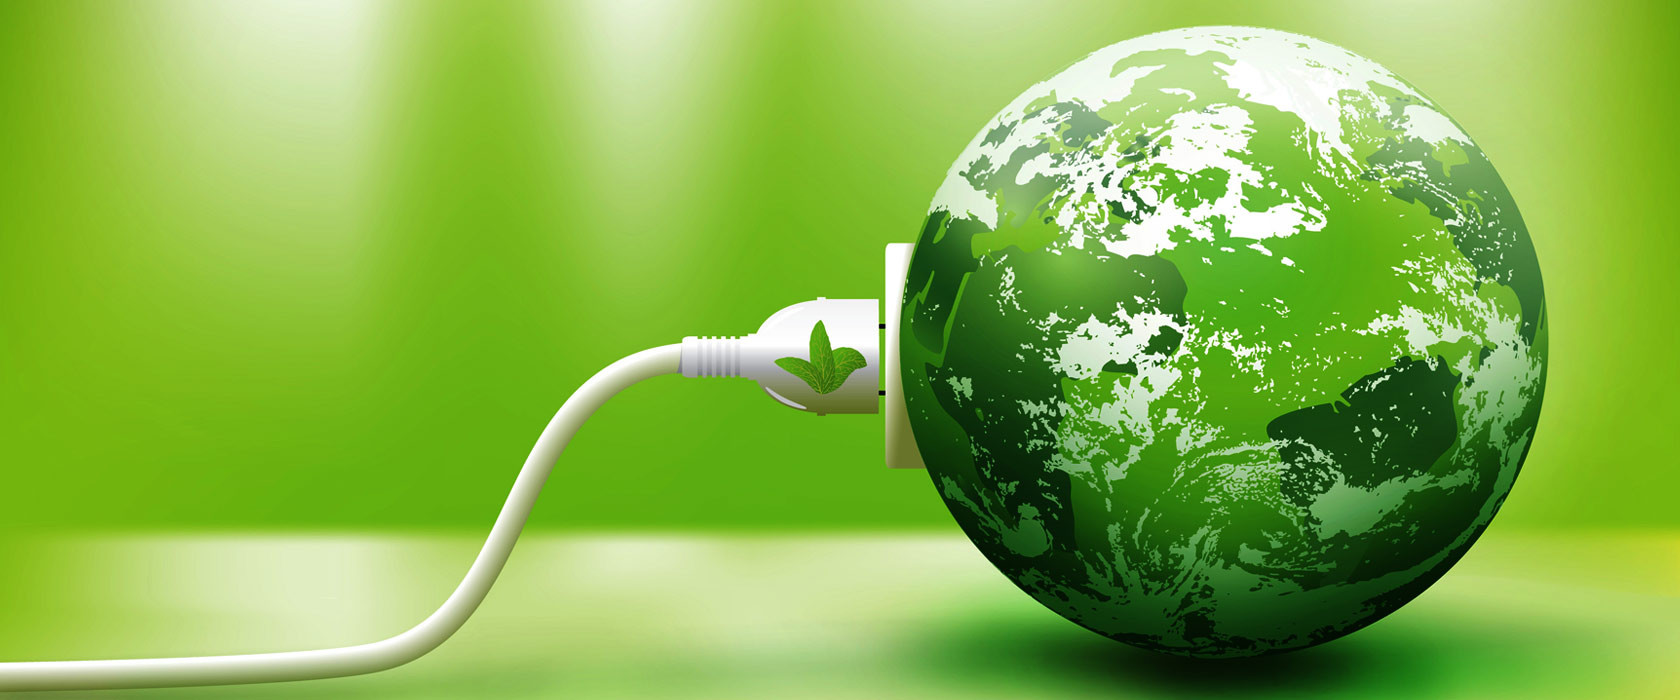 Πράσινη κοινωνική καινοτομία για την αντιμετώπιση της ενεργειακής φτώχειας